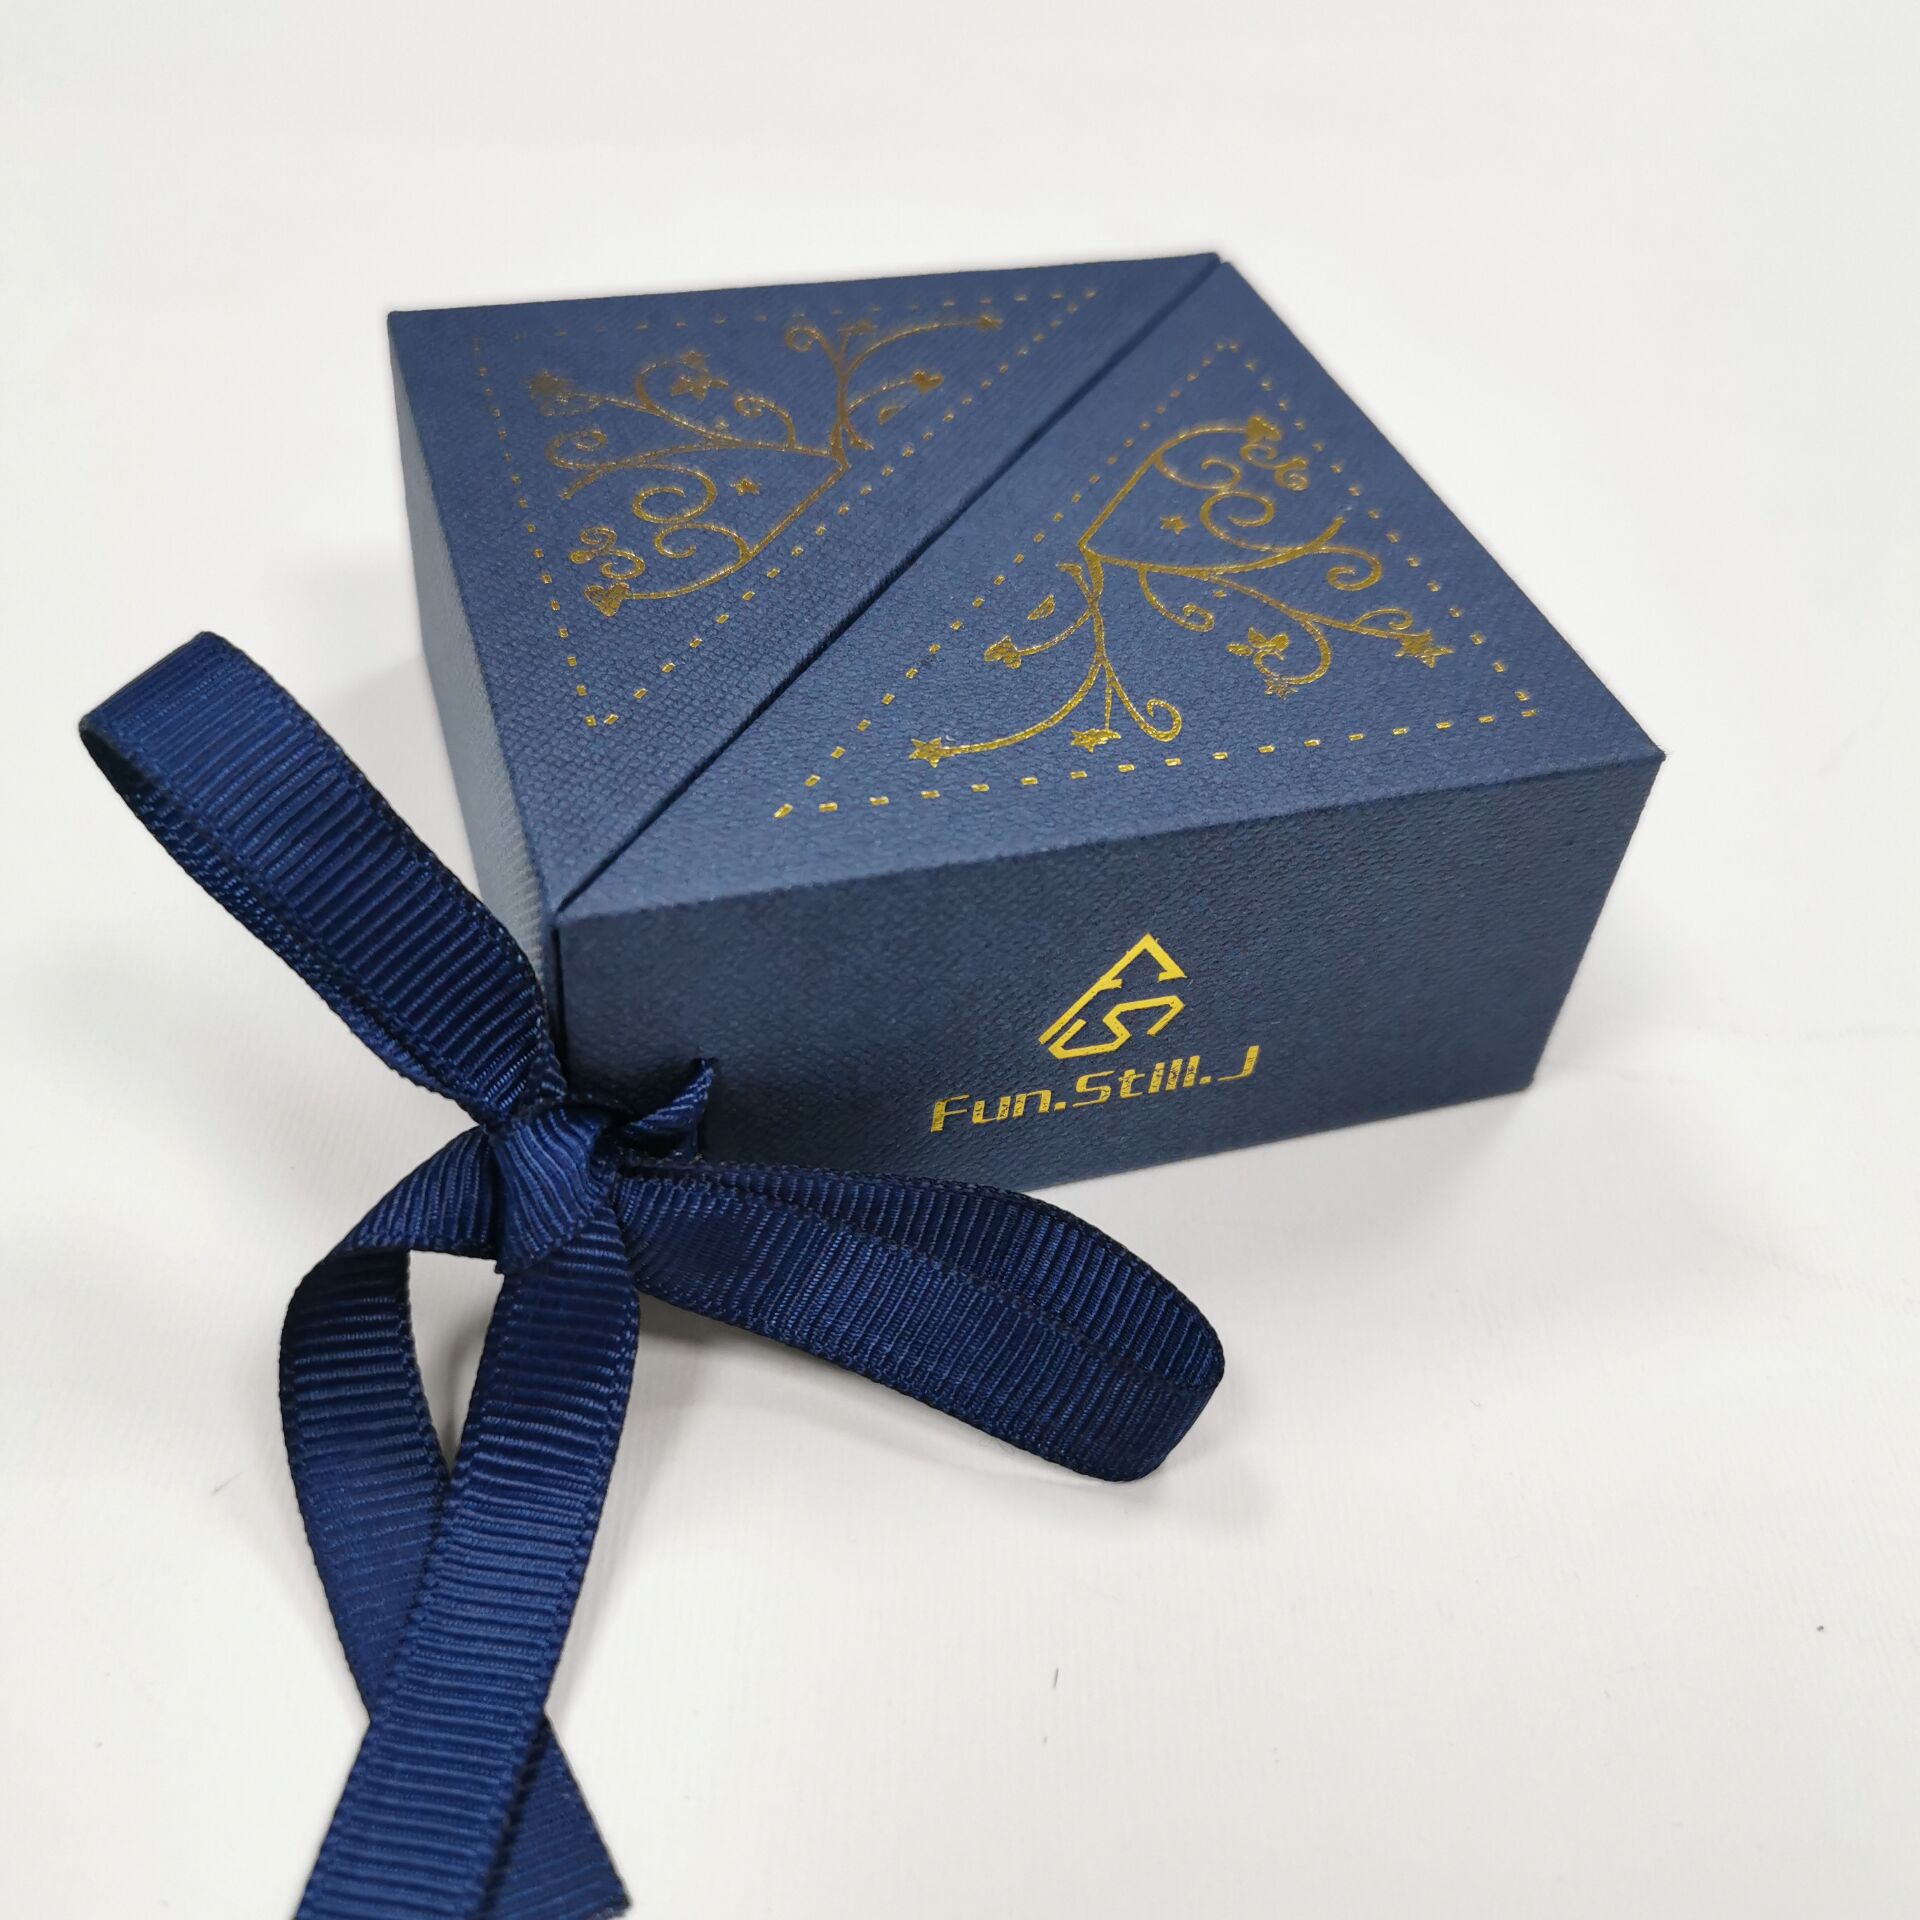 Yadao ปรับแต่งกล่องกระดาษฟองน้ำสีน้ำเงินด้วยริบบิ้น